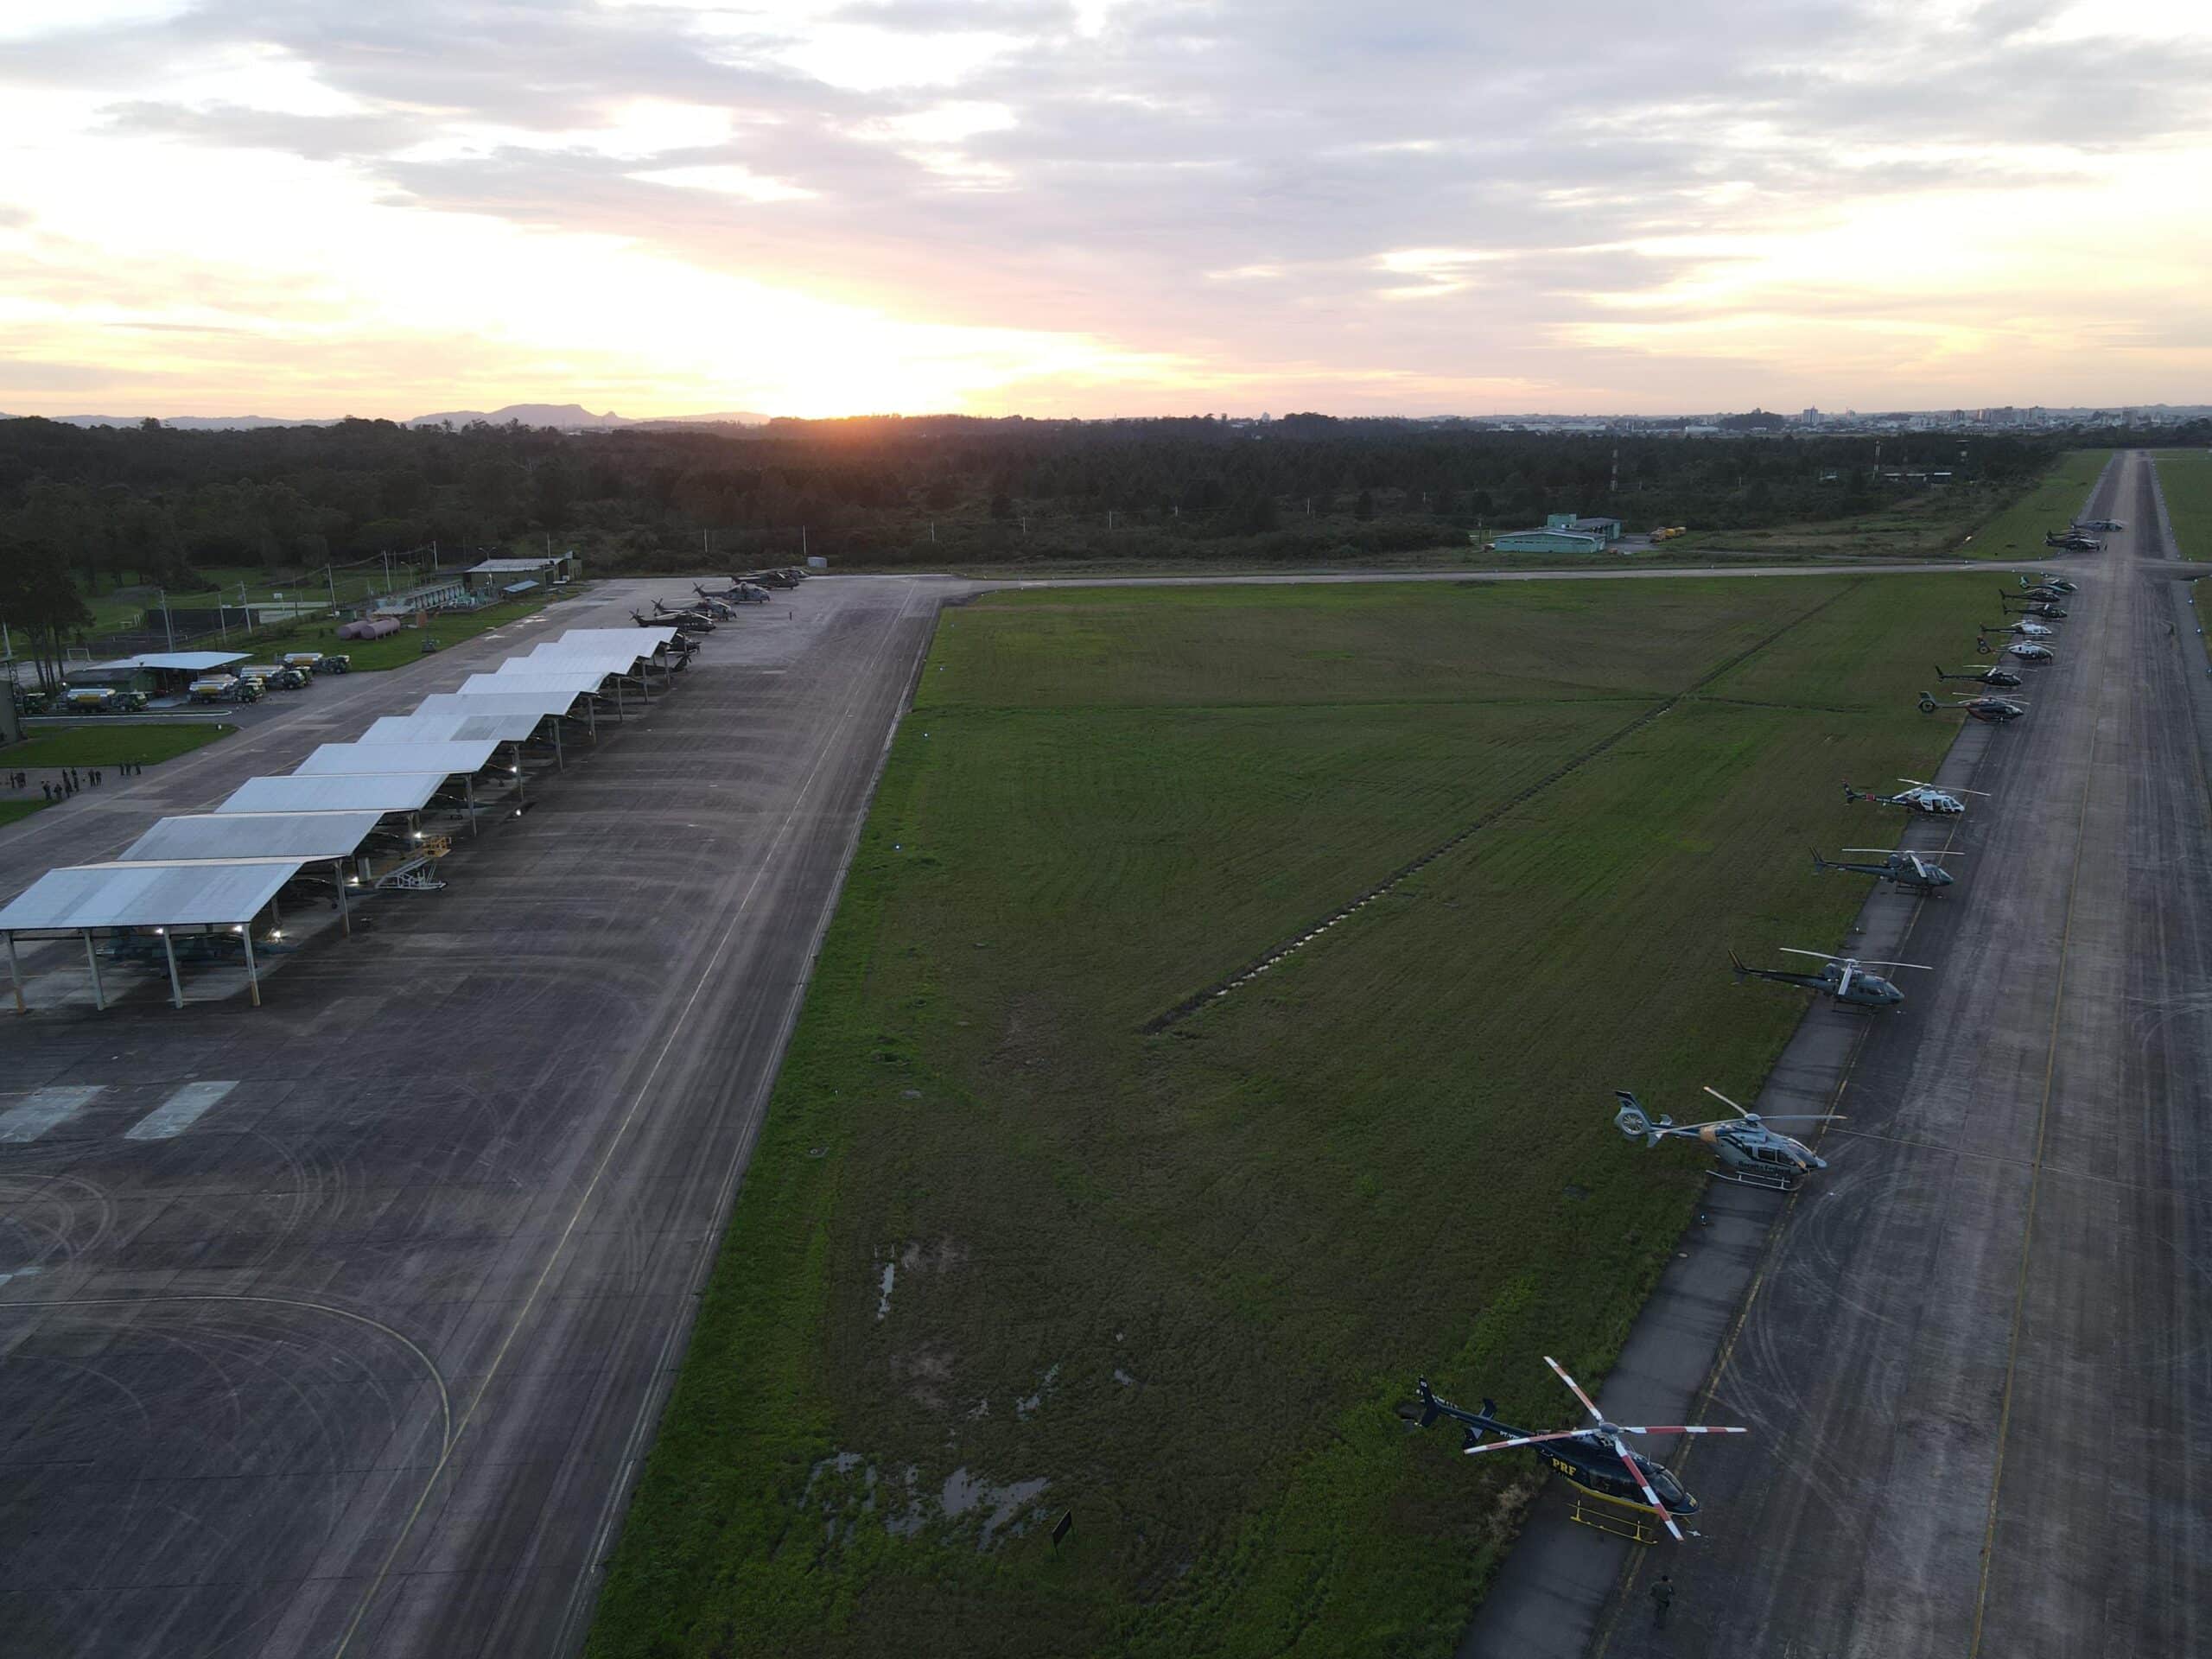 Hébergeant des hélicoptères civils, militaires et de sécurité publique, la base aérienne de Canoas est ouverte aux opérations aériennes commerciales. Photo : Escadron Pampa.